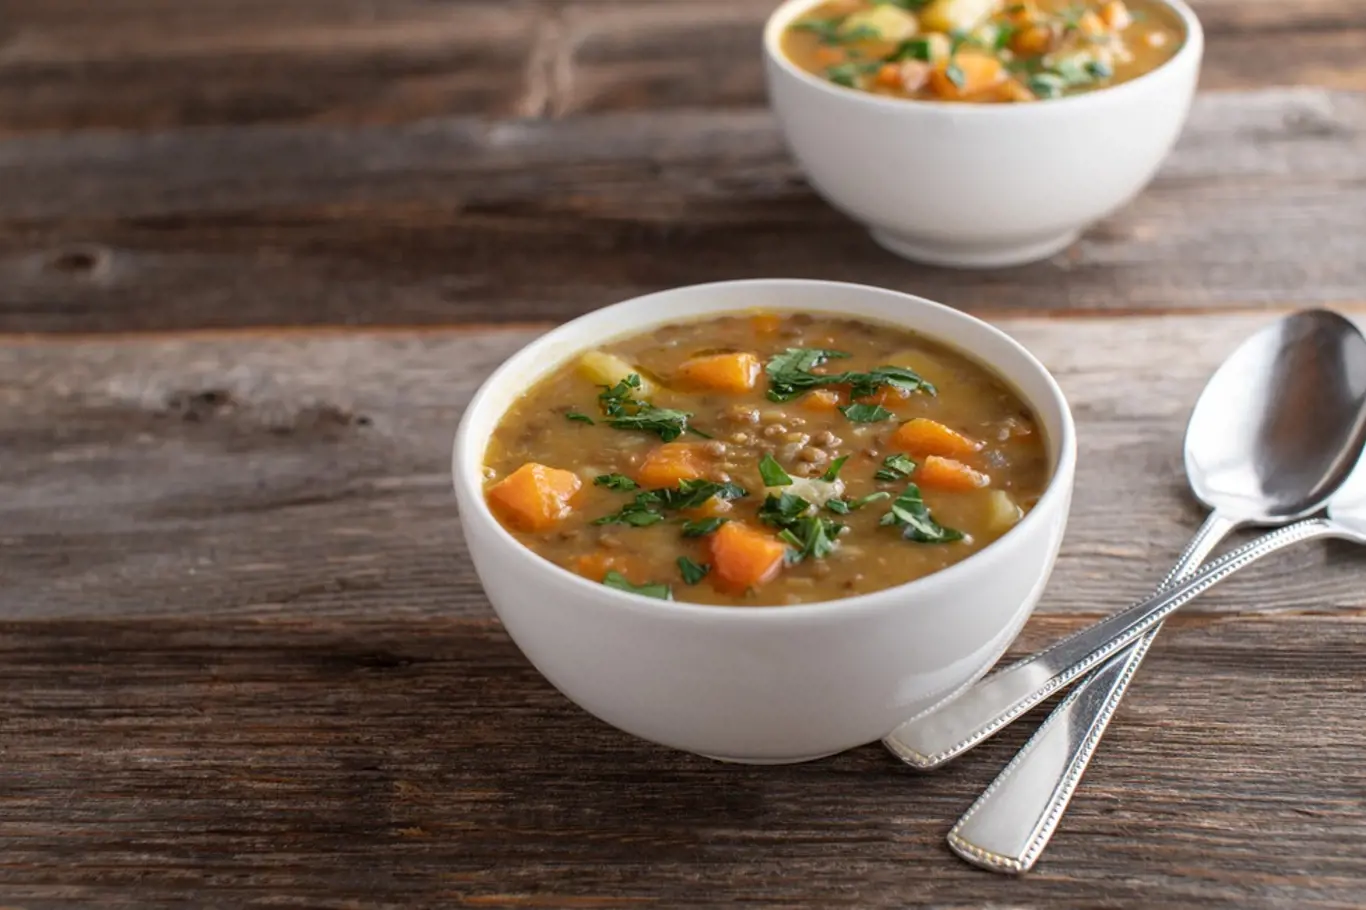 Čočková polévka se u nás tradičně podává 1. ledna, na Nový rok.